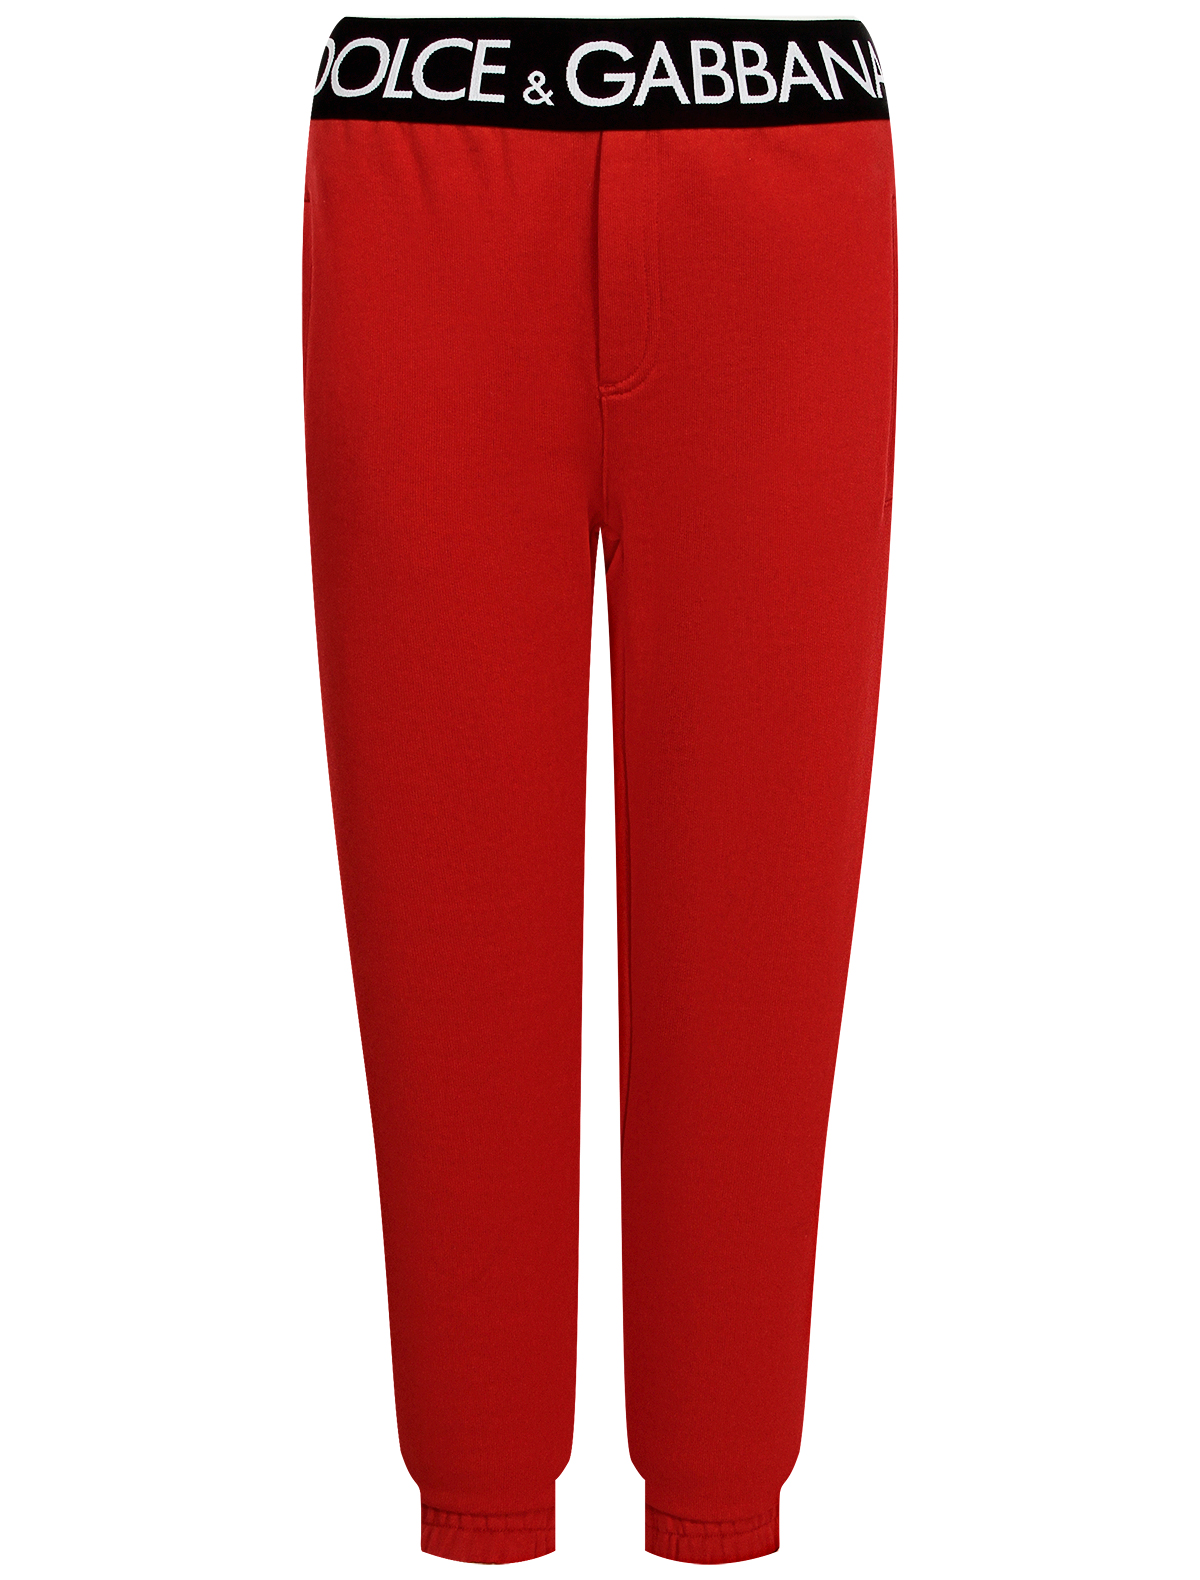 спортивные брюки dolce & gabbana для девочки, красные